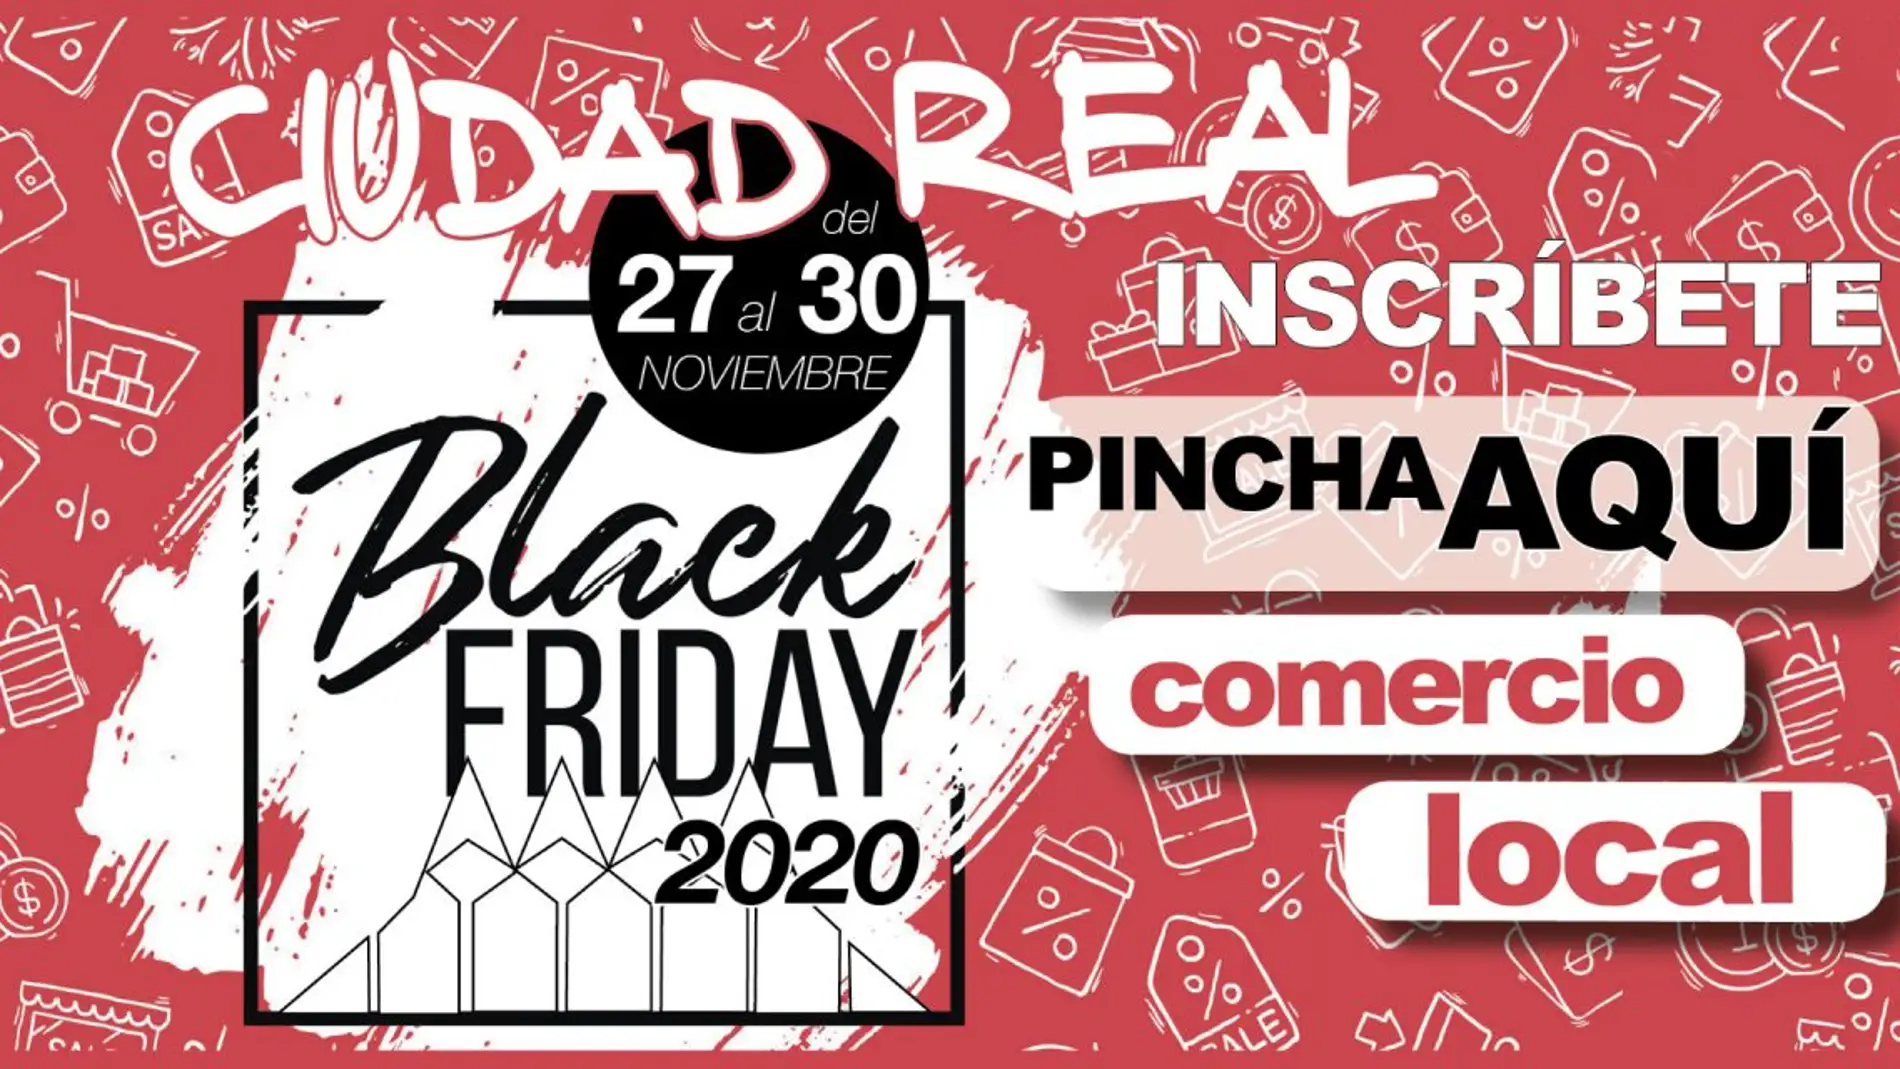 73 comercios de Ciudad Real se adhieren al "Black Friday"